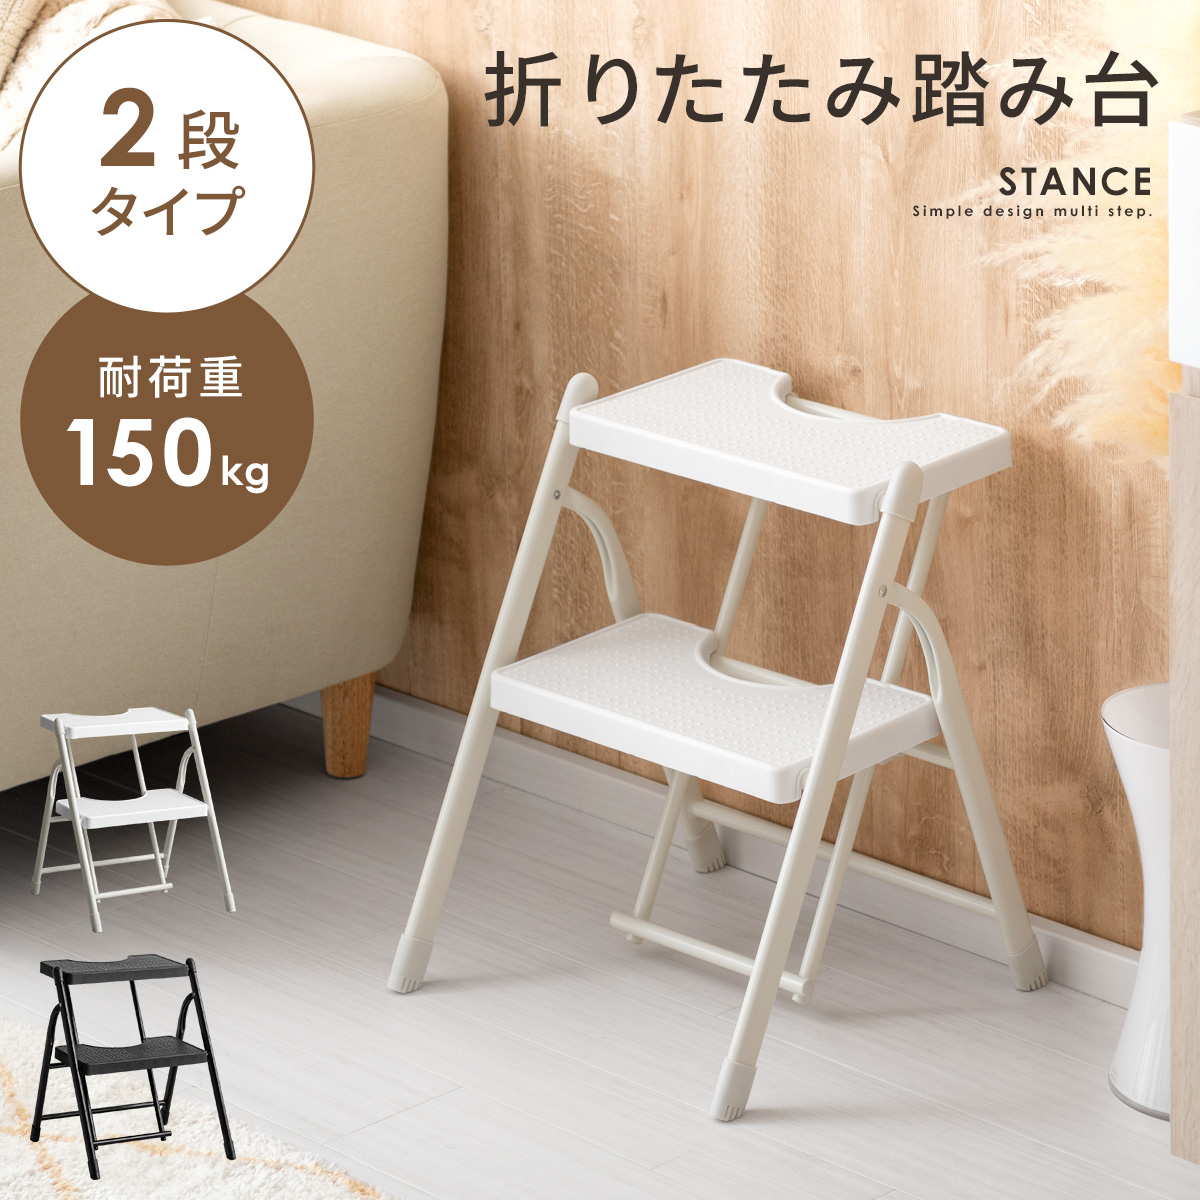 マルチステップ STANCE(スタンス) 2段タイプ 【公式】 エア・リゾーム インテリア・家具通販